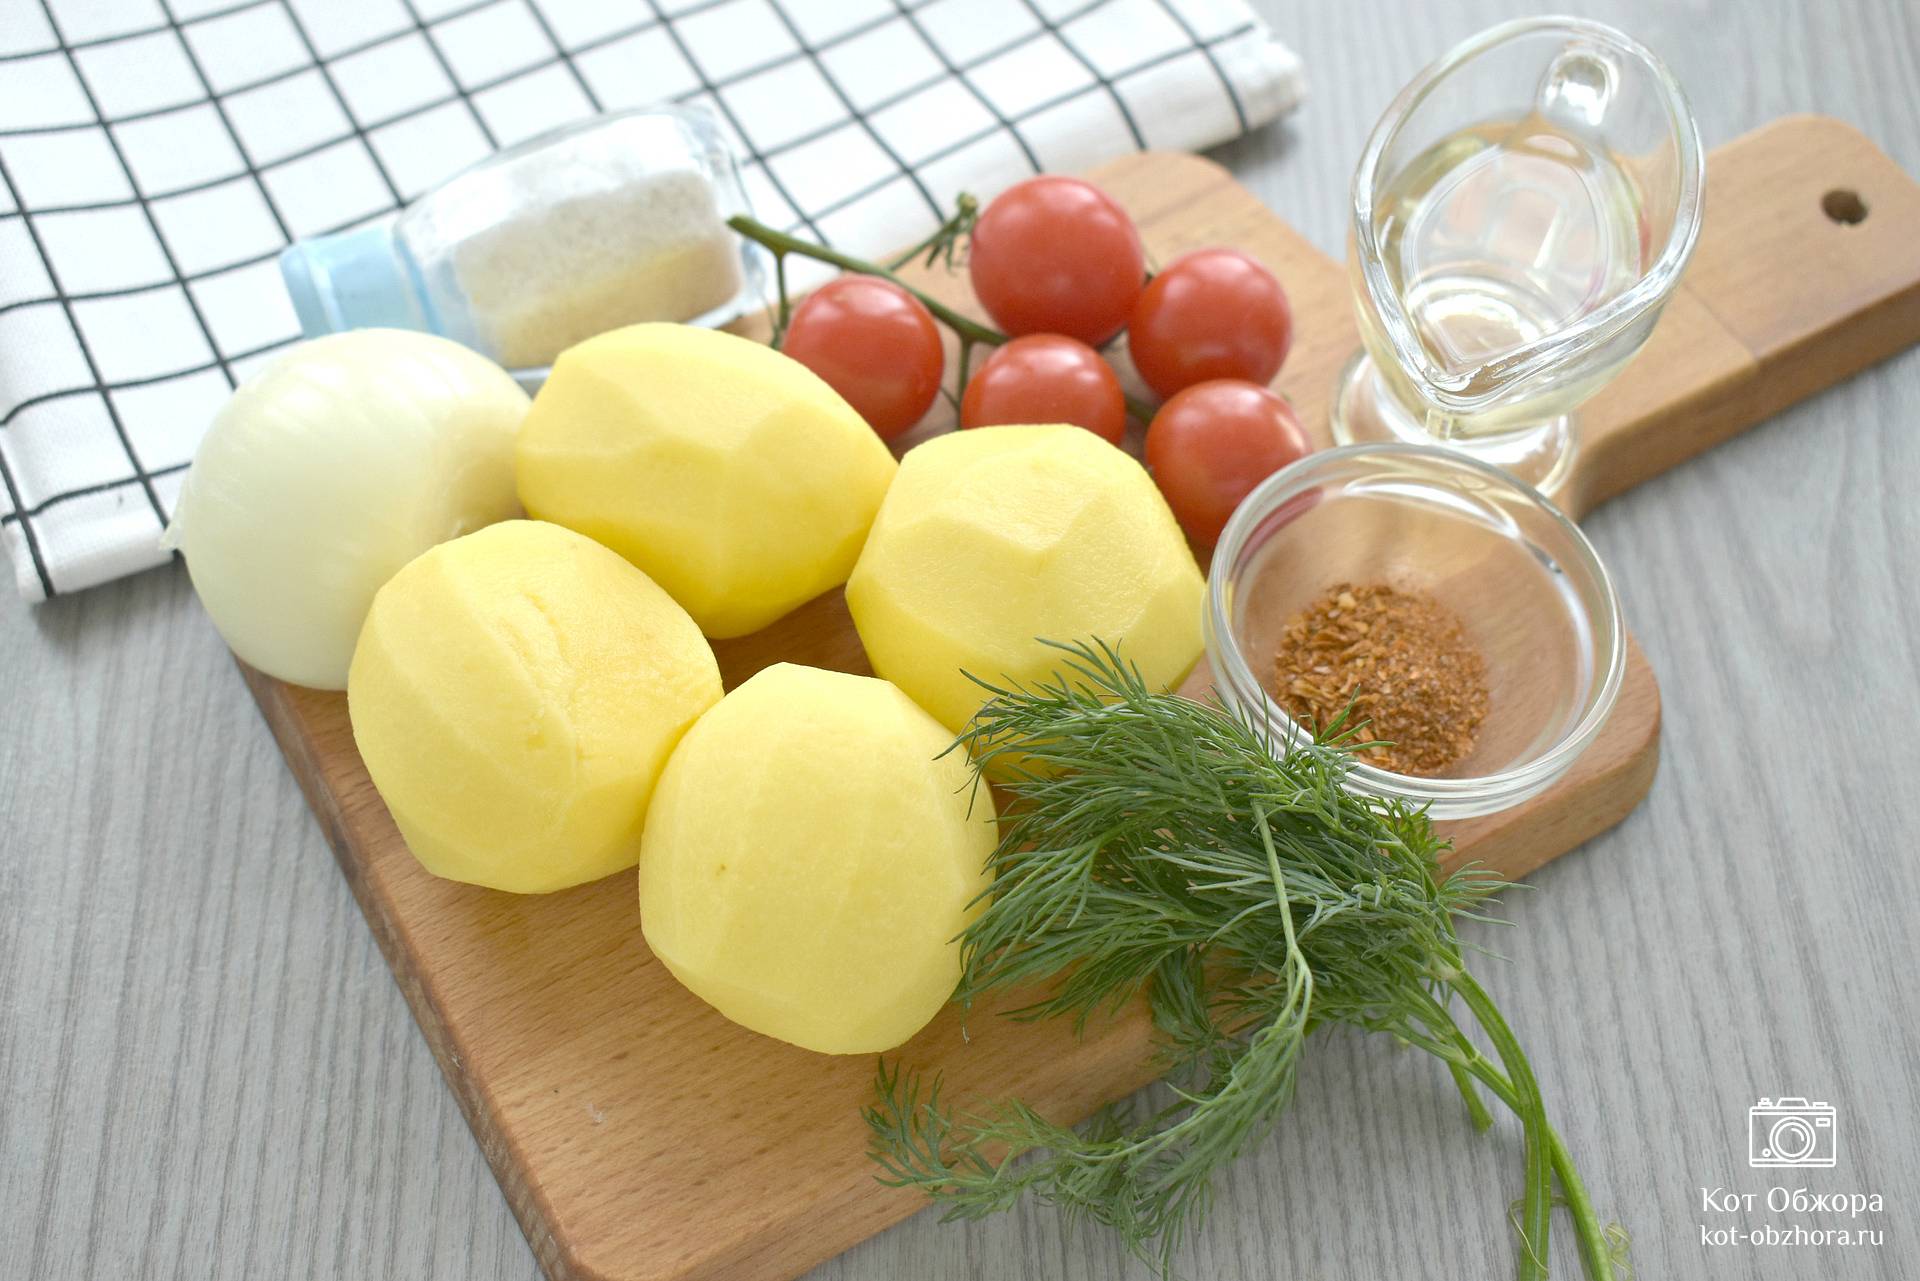 Картошка по-деревенски на сковороде — рецепт с фото | Рецепт | Еда, Армянская еда, Кулинария